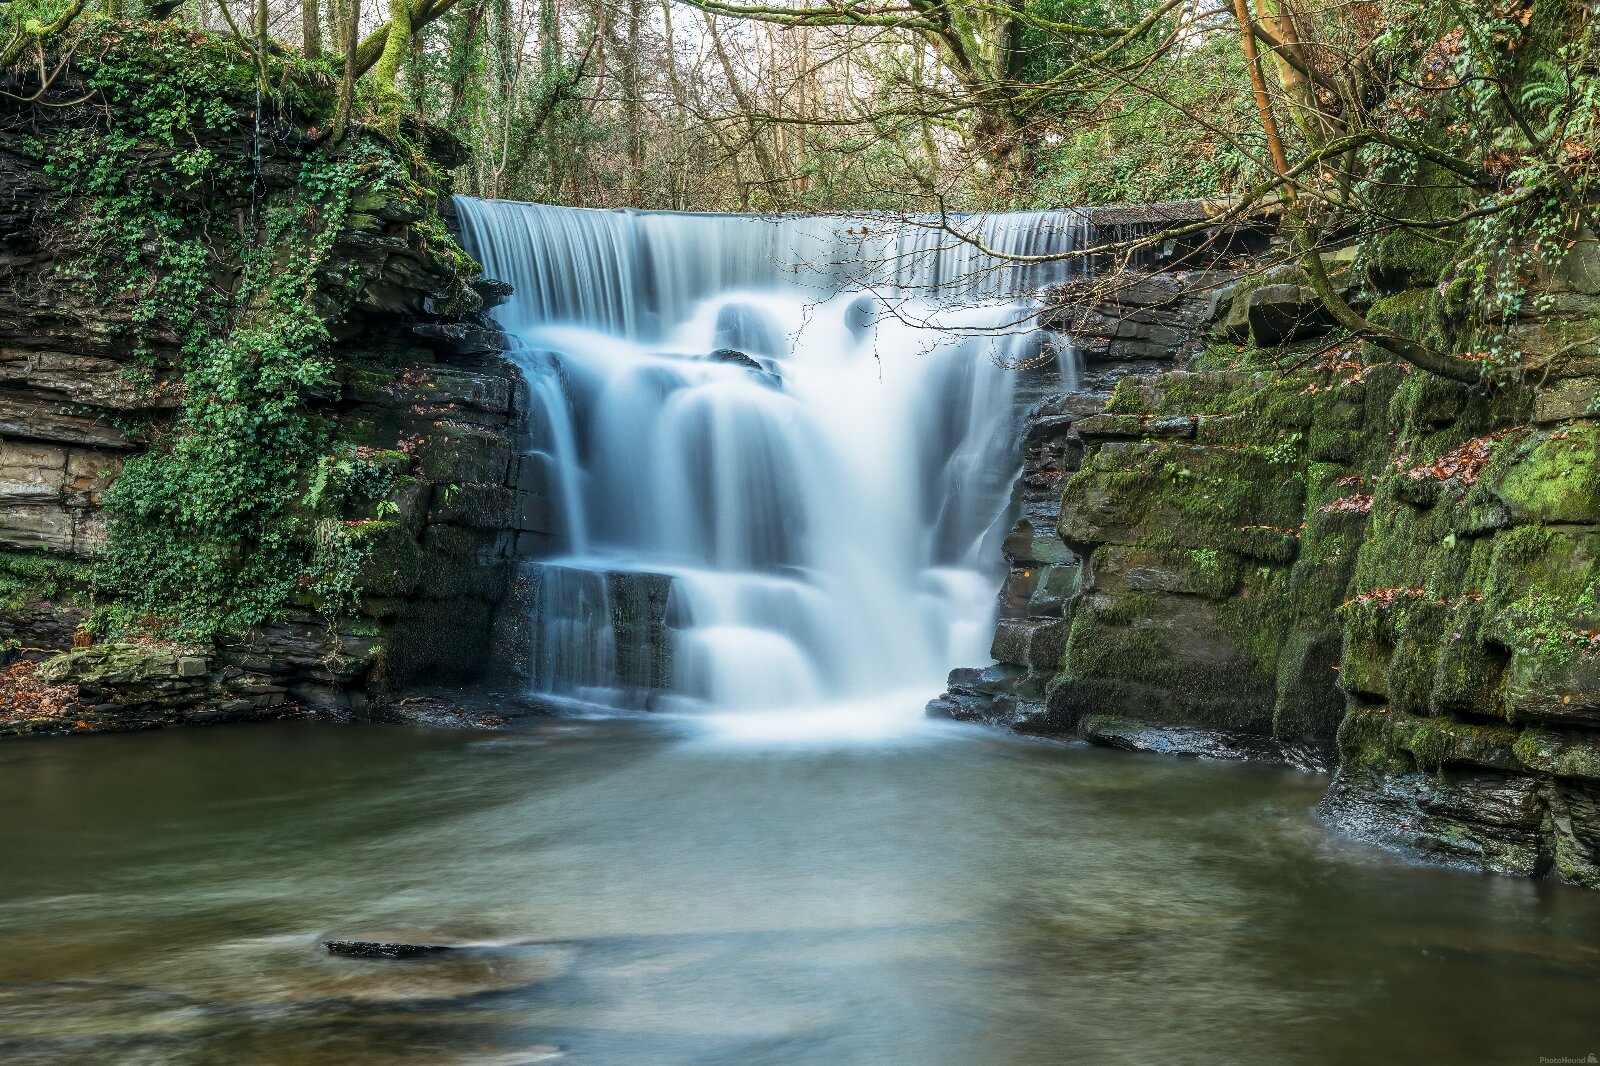 Image of Neath Abbey Waterfall by Steven Godwin